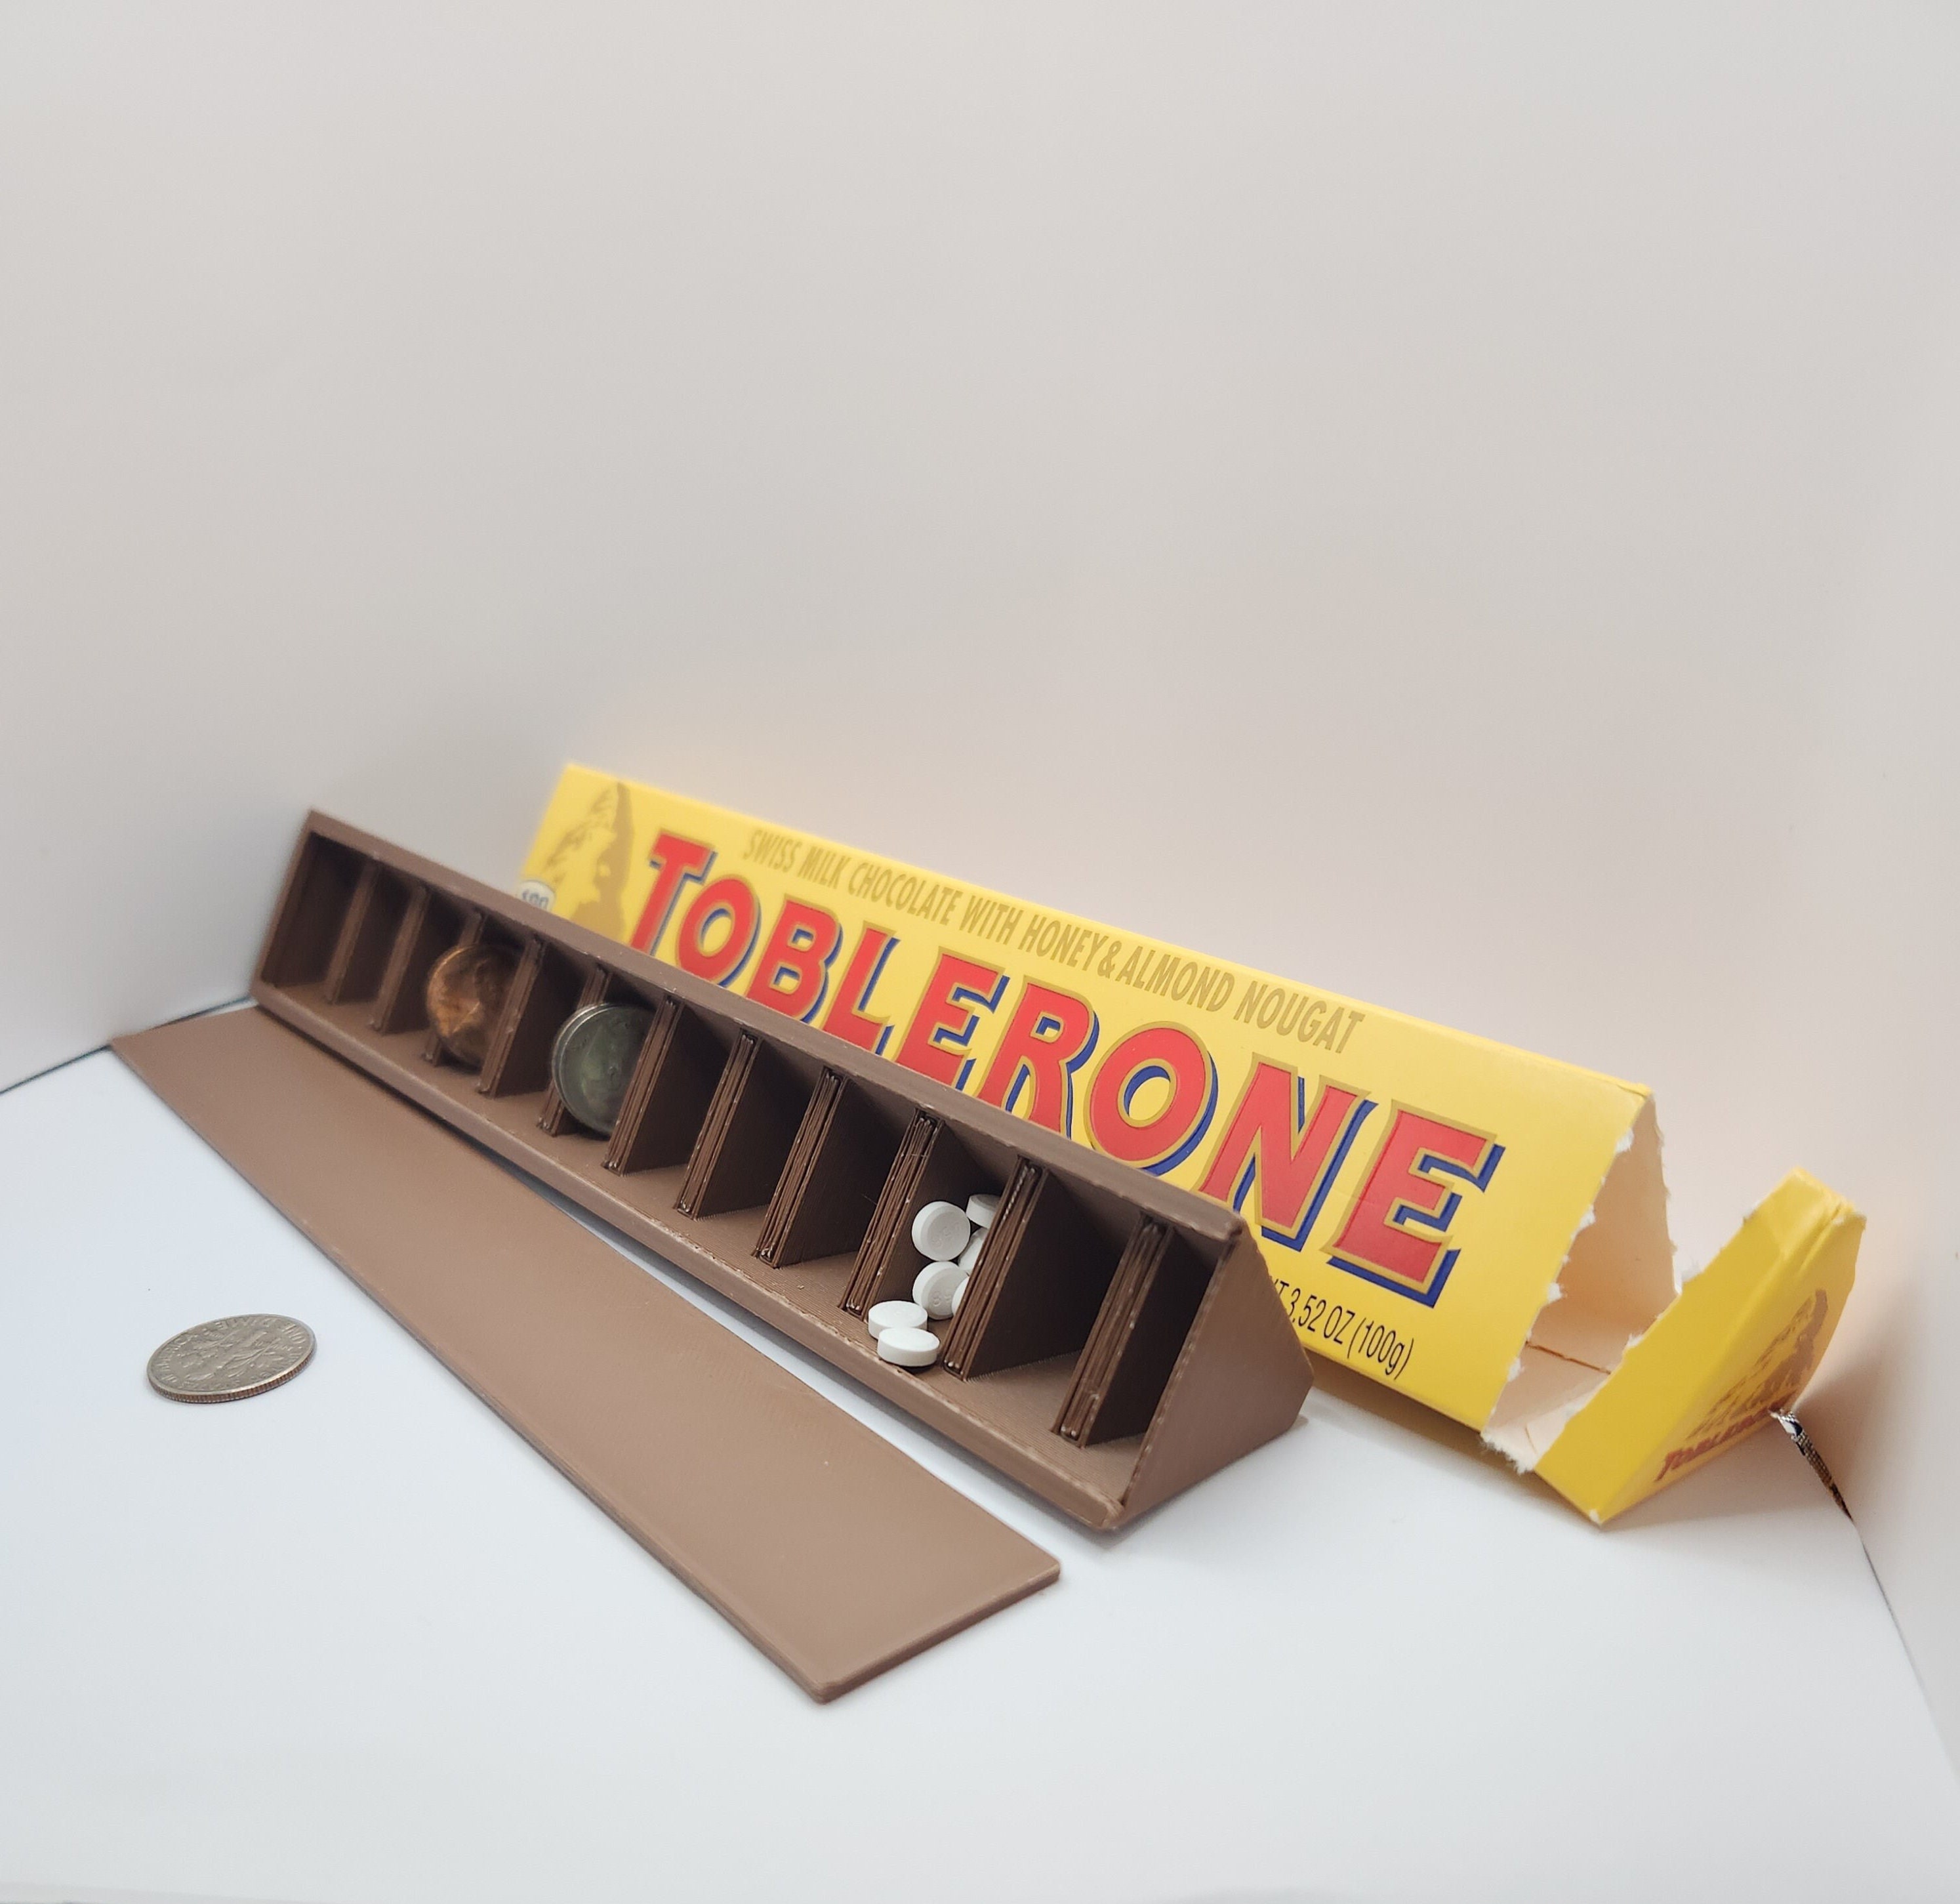 Barre de Toblerone® 360g personnalisé Love - Chocolat Noir